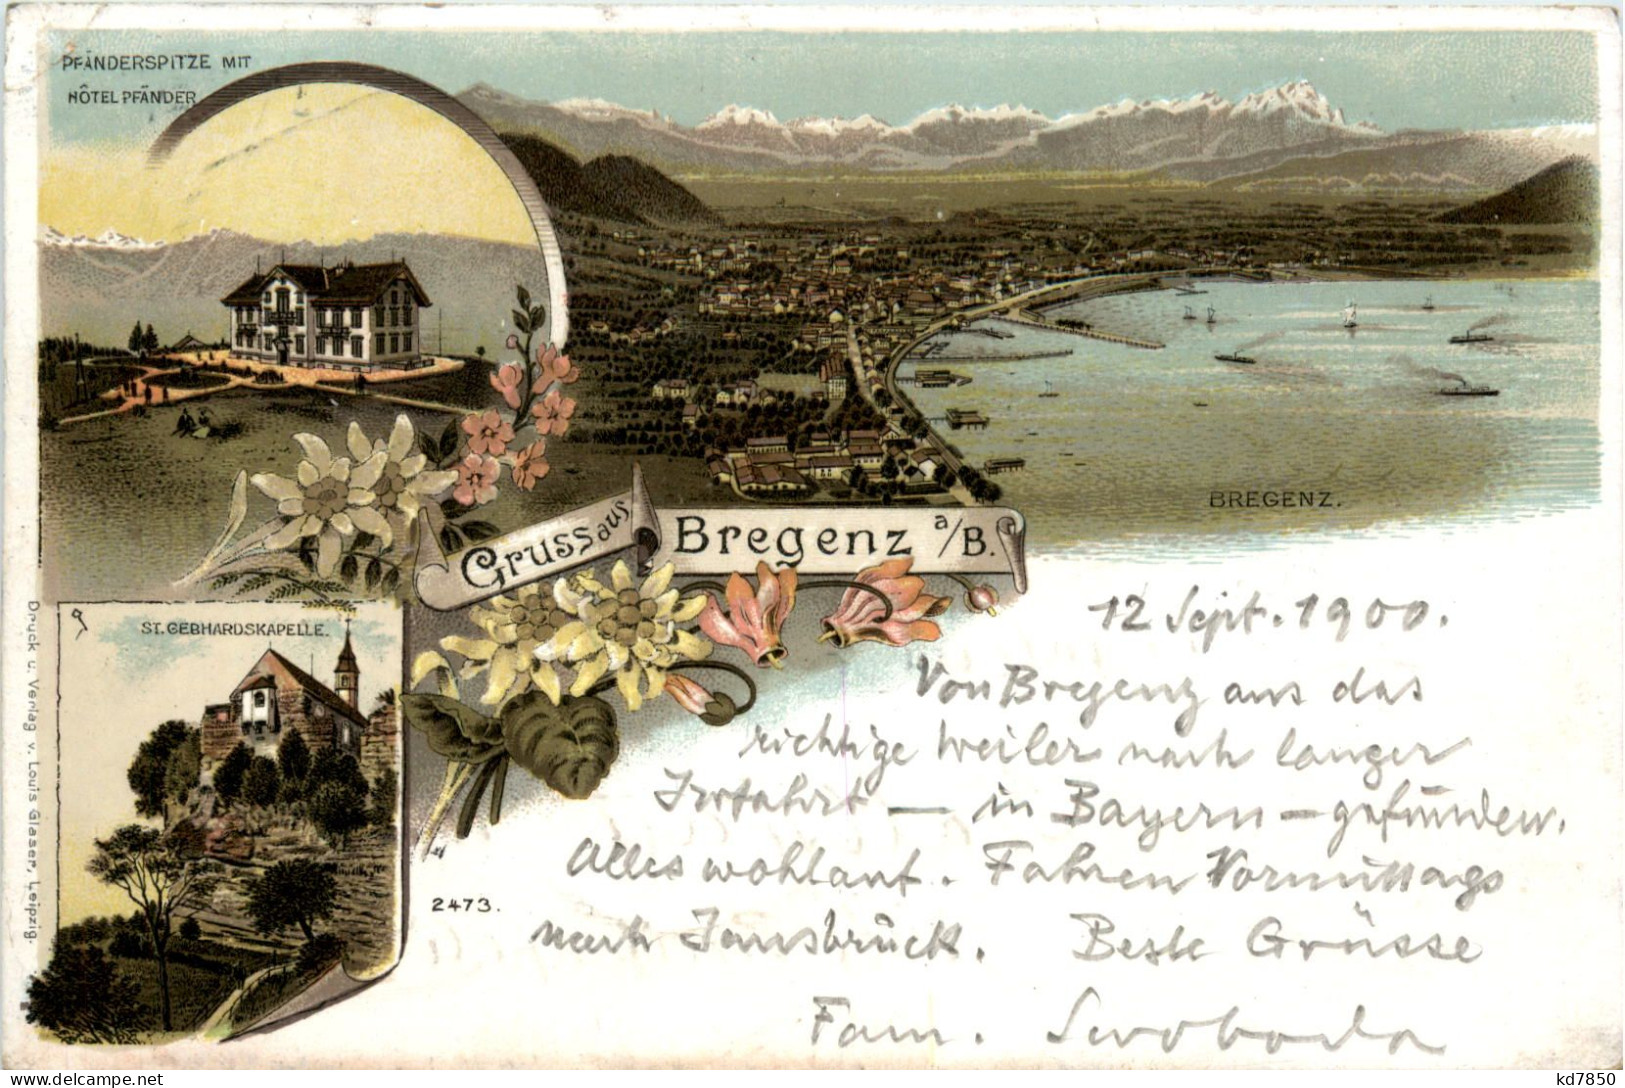 Gruss Aus Bregenz - Litho - Bregenz